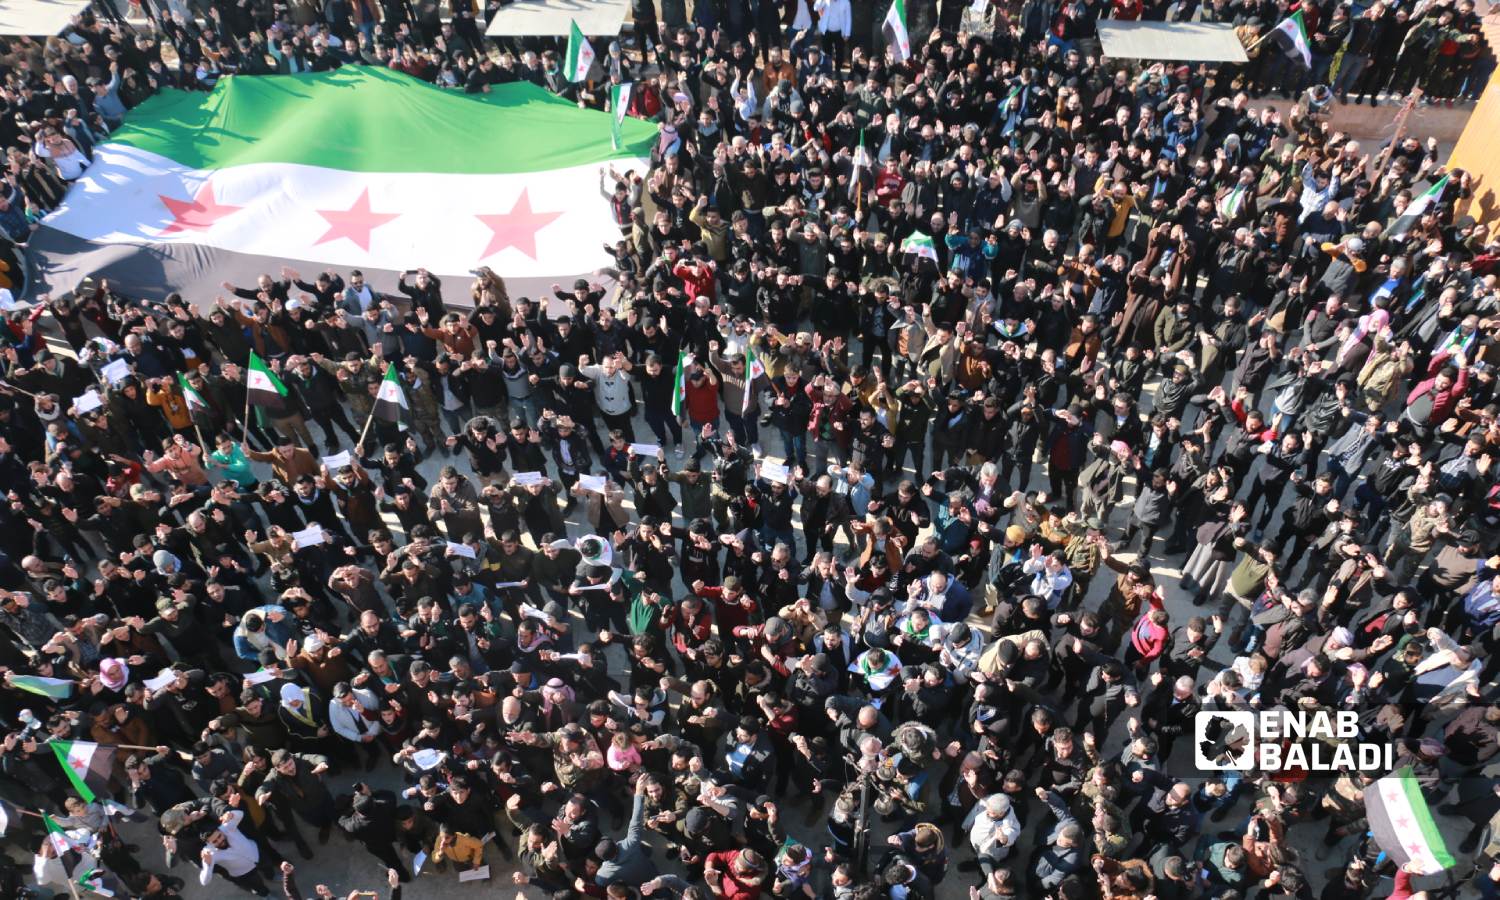 متظاهرون في مدينة اعزاز بريف حلب الشمالي تنديدًا بالتصريحات التركية حول التقارب مع النظام السوري وتأكيدًا على استمرار الثورة السورية- 30 من كانون الأول 2022 (عنب بلدي/ ديان جنباز)